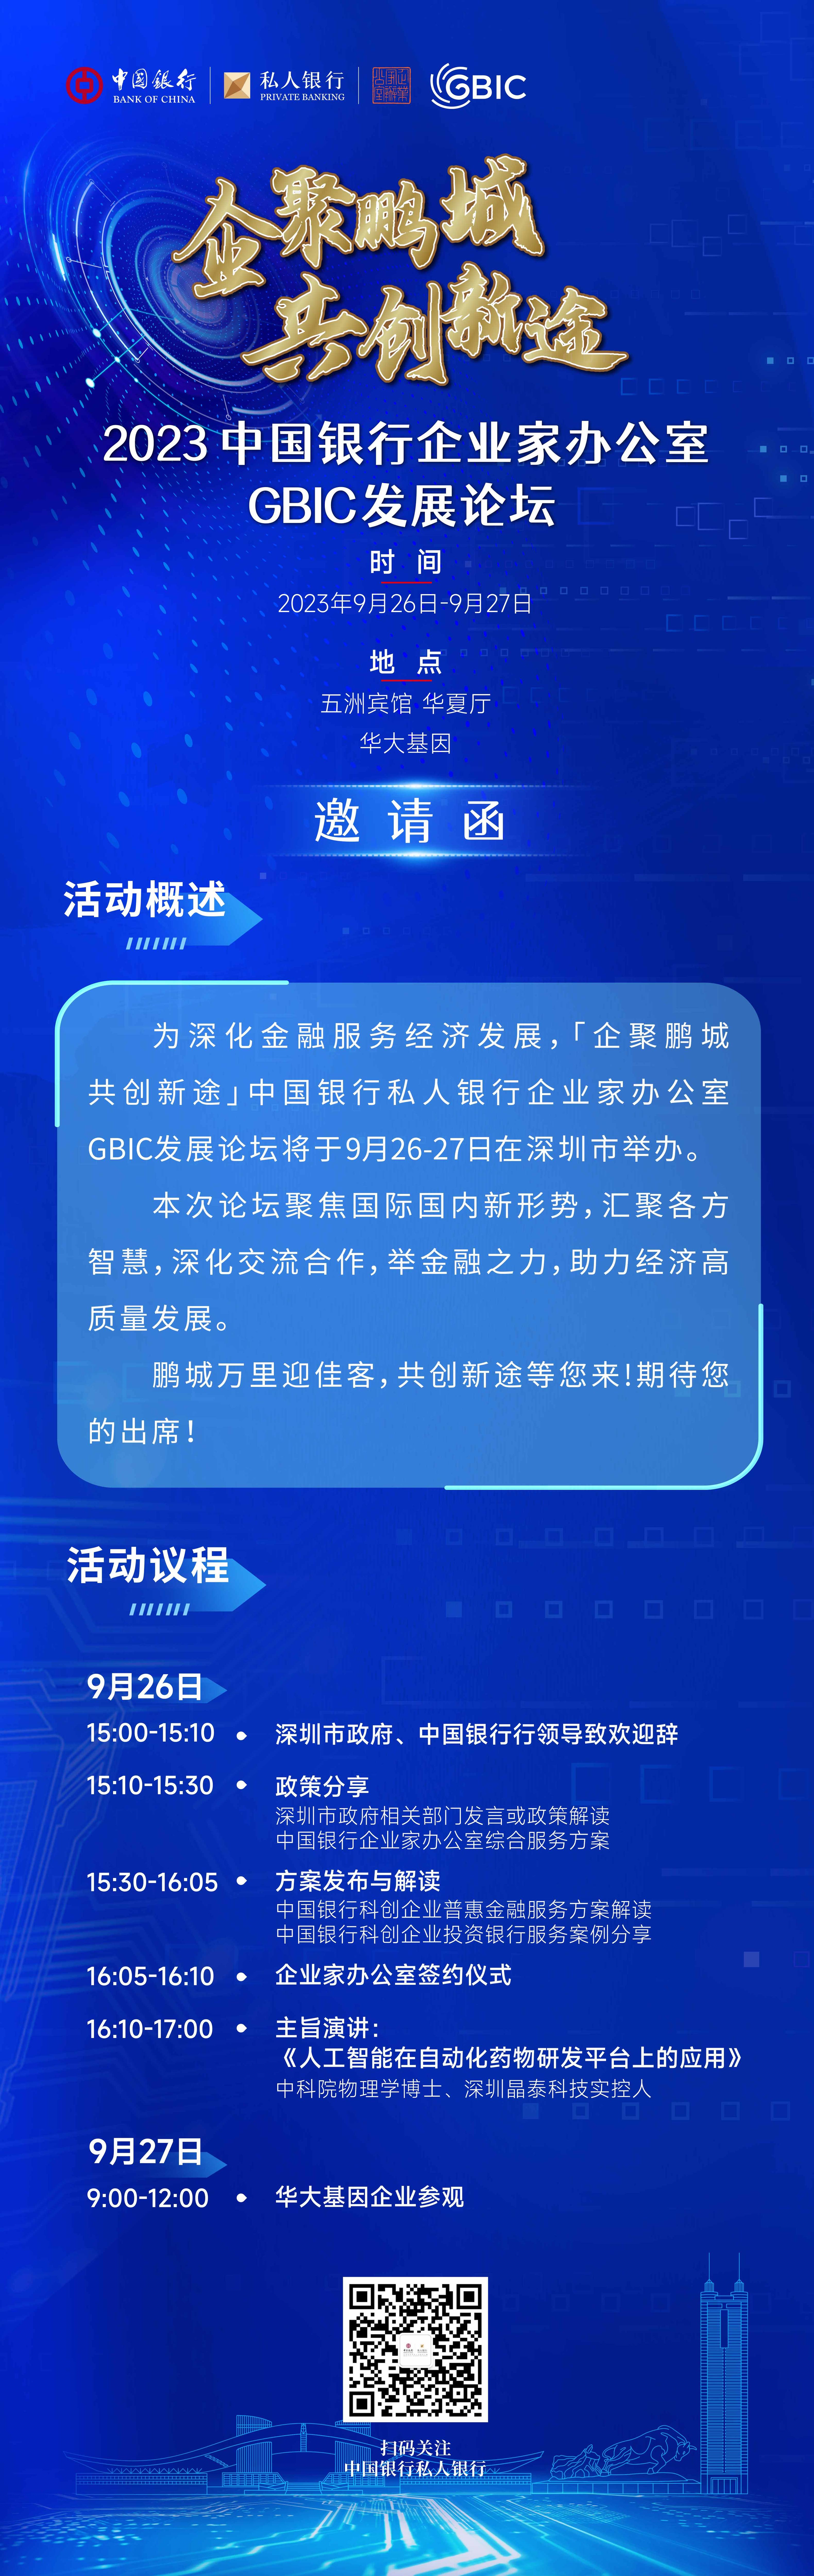 企聚鹏城 共创新途丨2023中国银行企业家办公室GBIC发展论坛